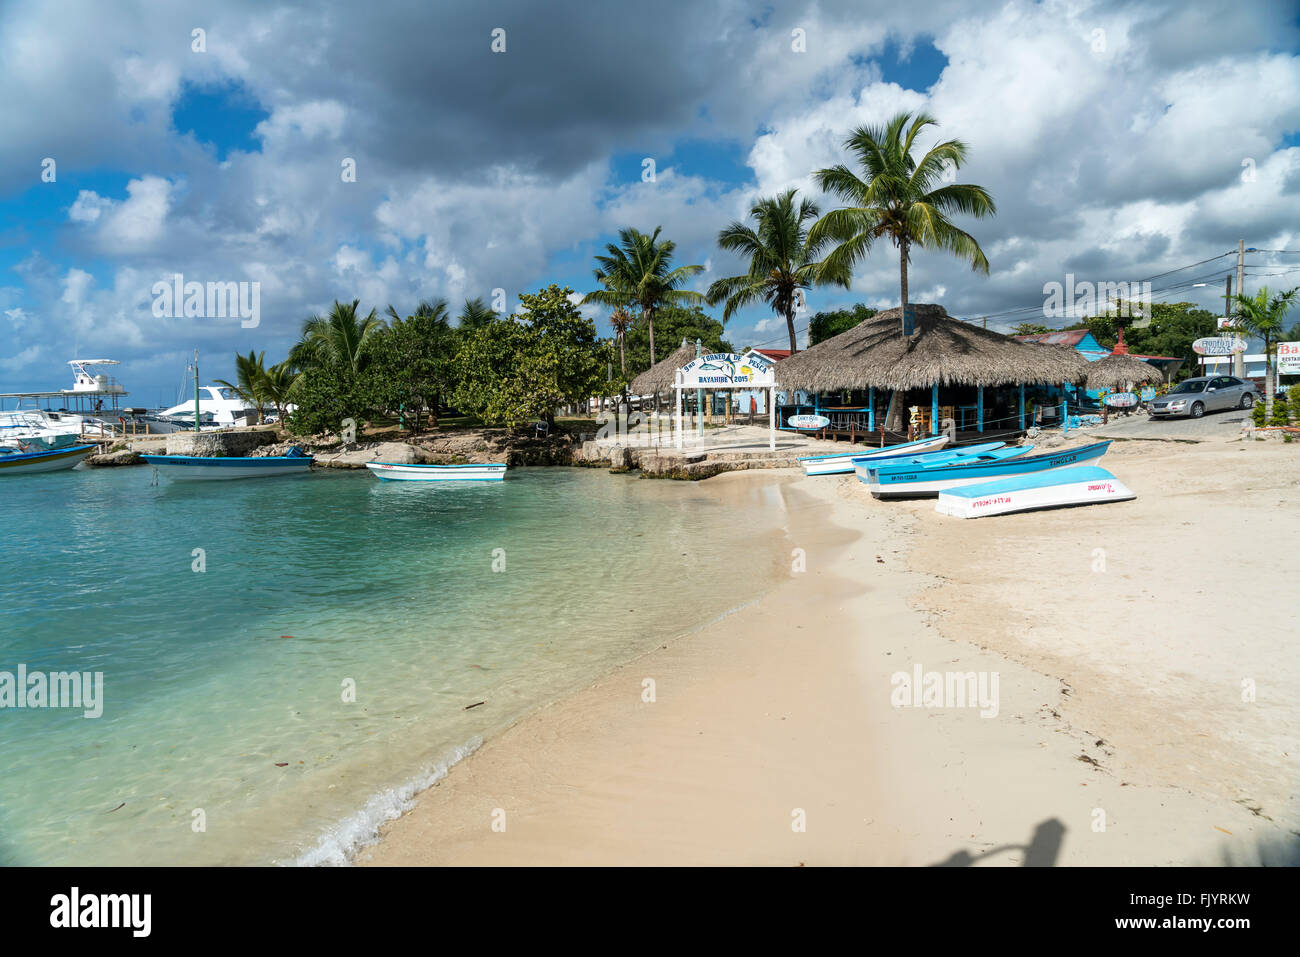 La playa y el puerto deportivo en Bayahibe, República Dominicana, El Caribe, América, Foto de stock